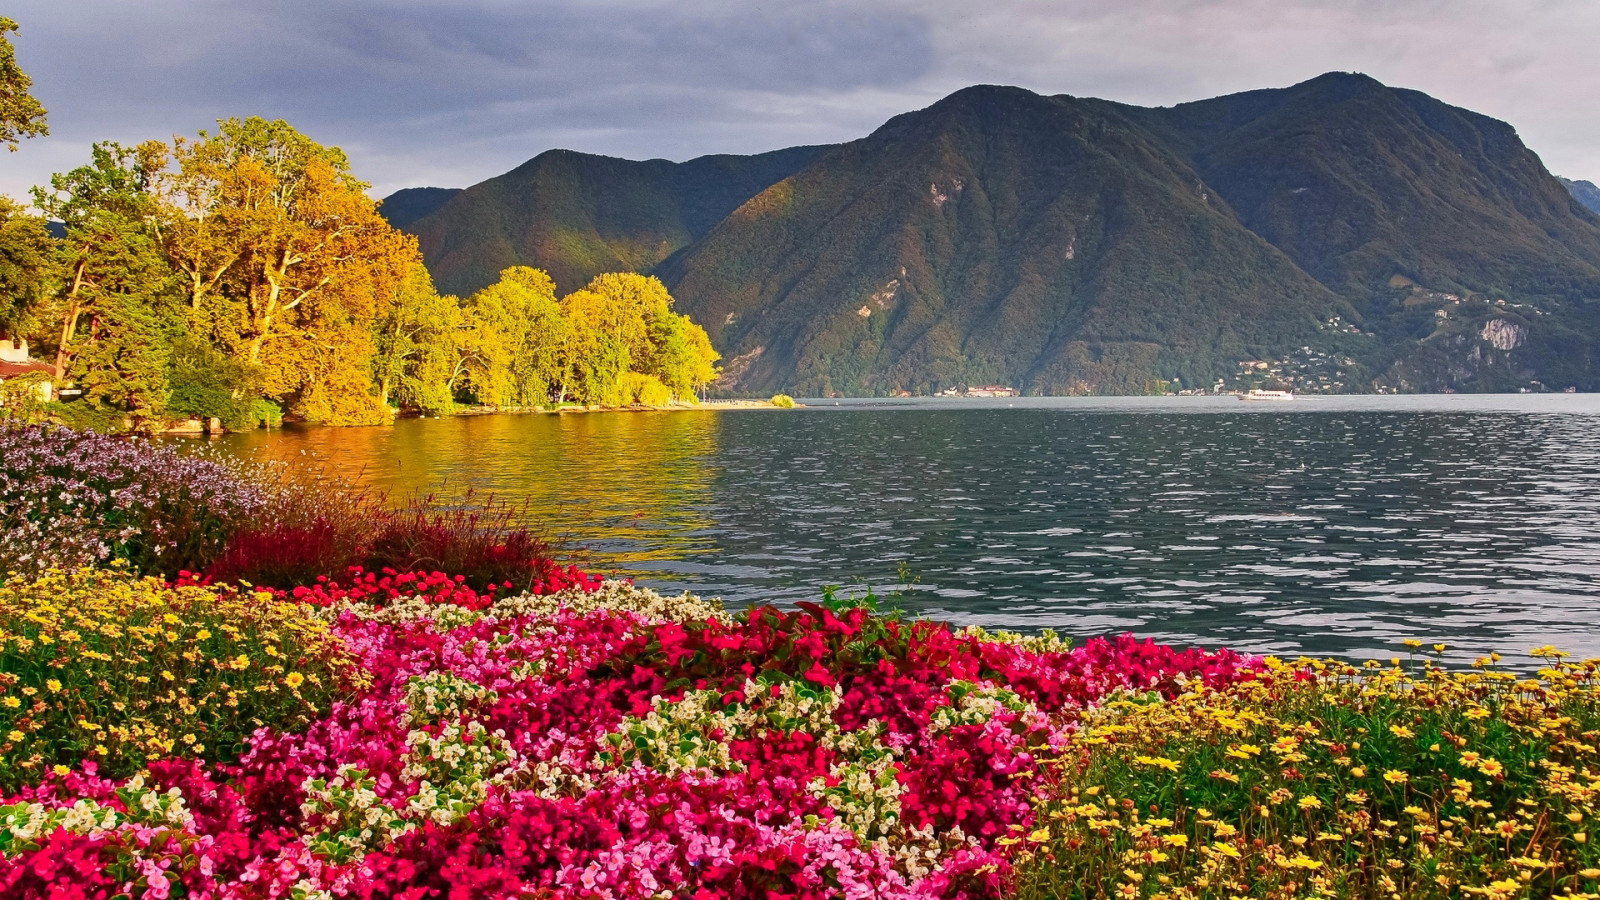 ธรรมชาติ, ทะเลสาป, ภูมิประเทศ, ดอกไม้, ภูเขา, ภาพถ่าย